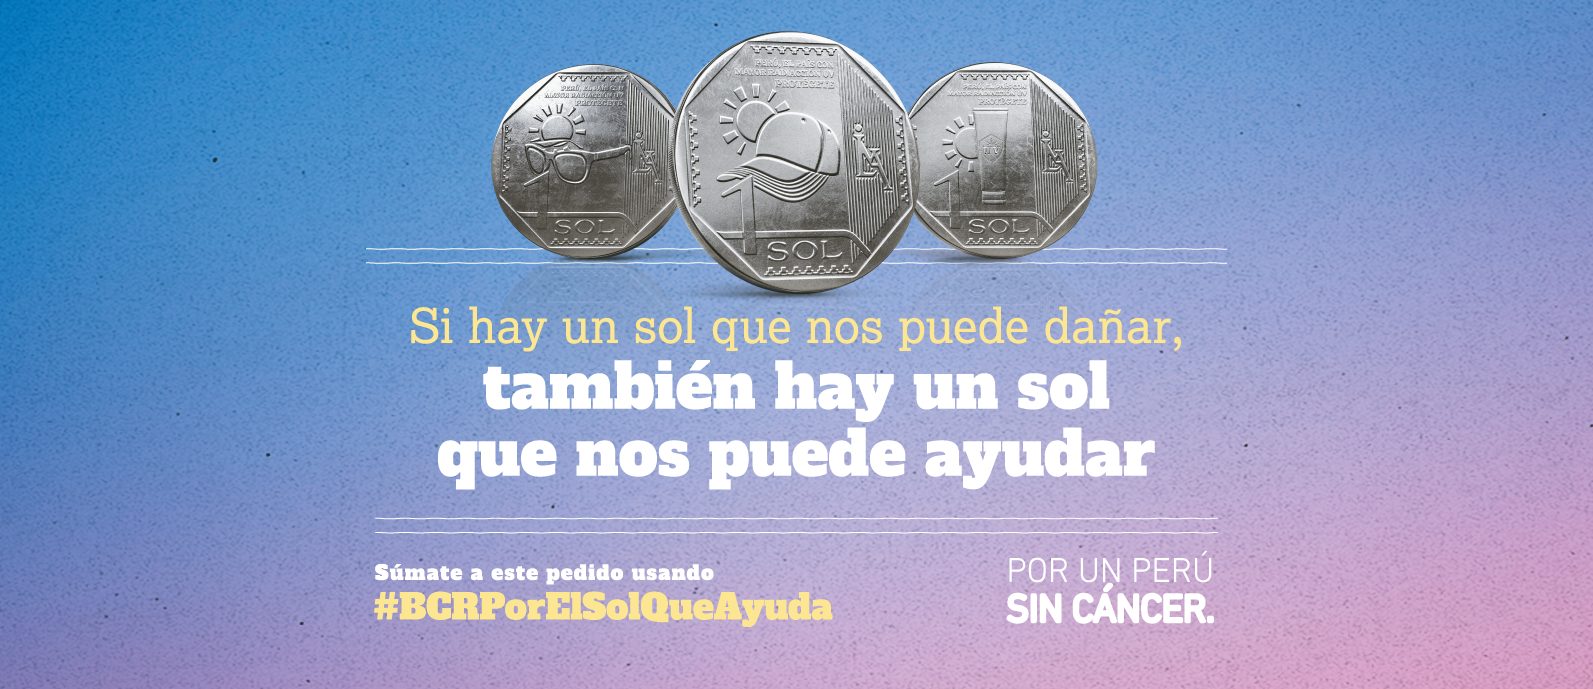 Foto de Piden al BCR imprimir monedas de edición especial para luchar contra el cáncer